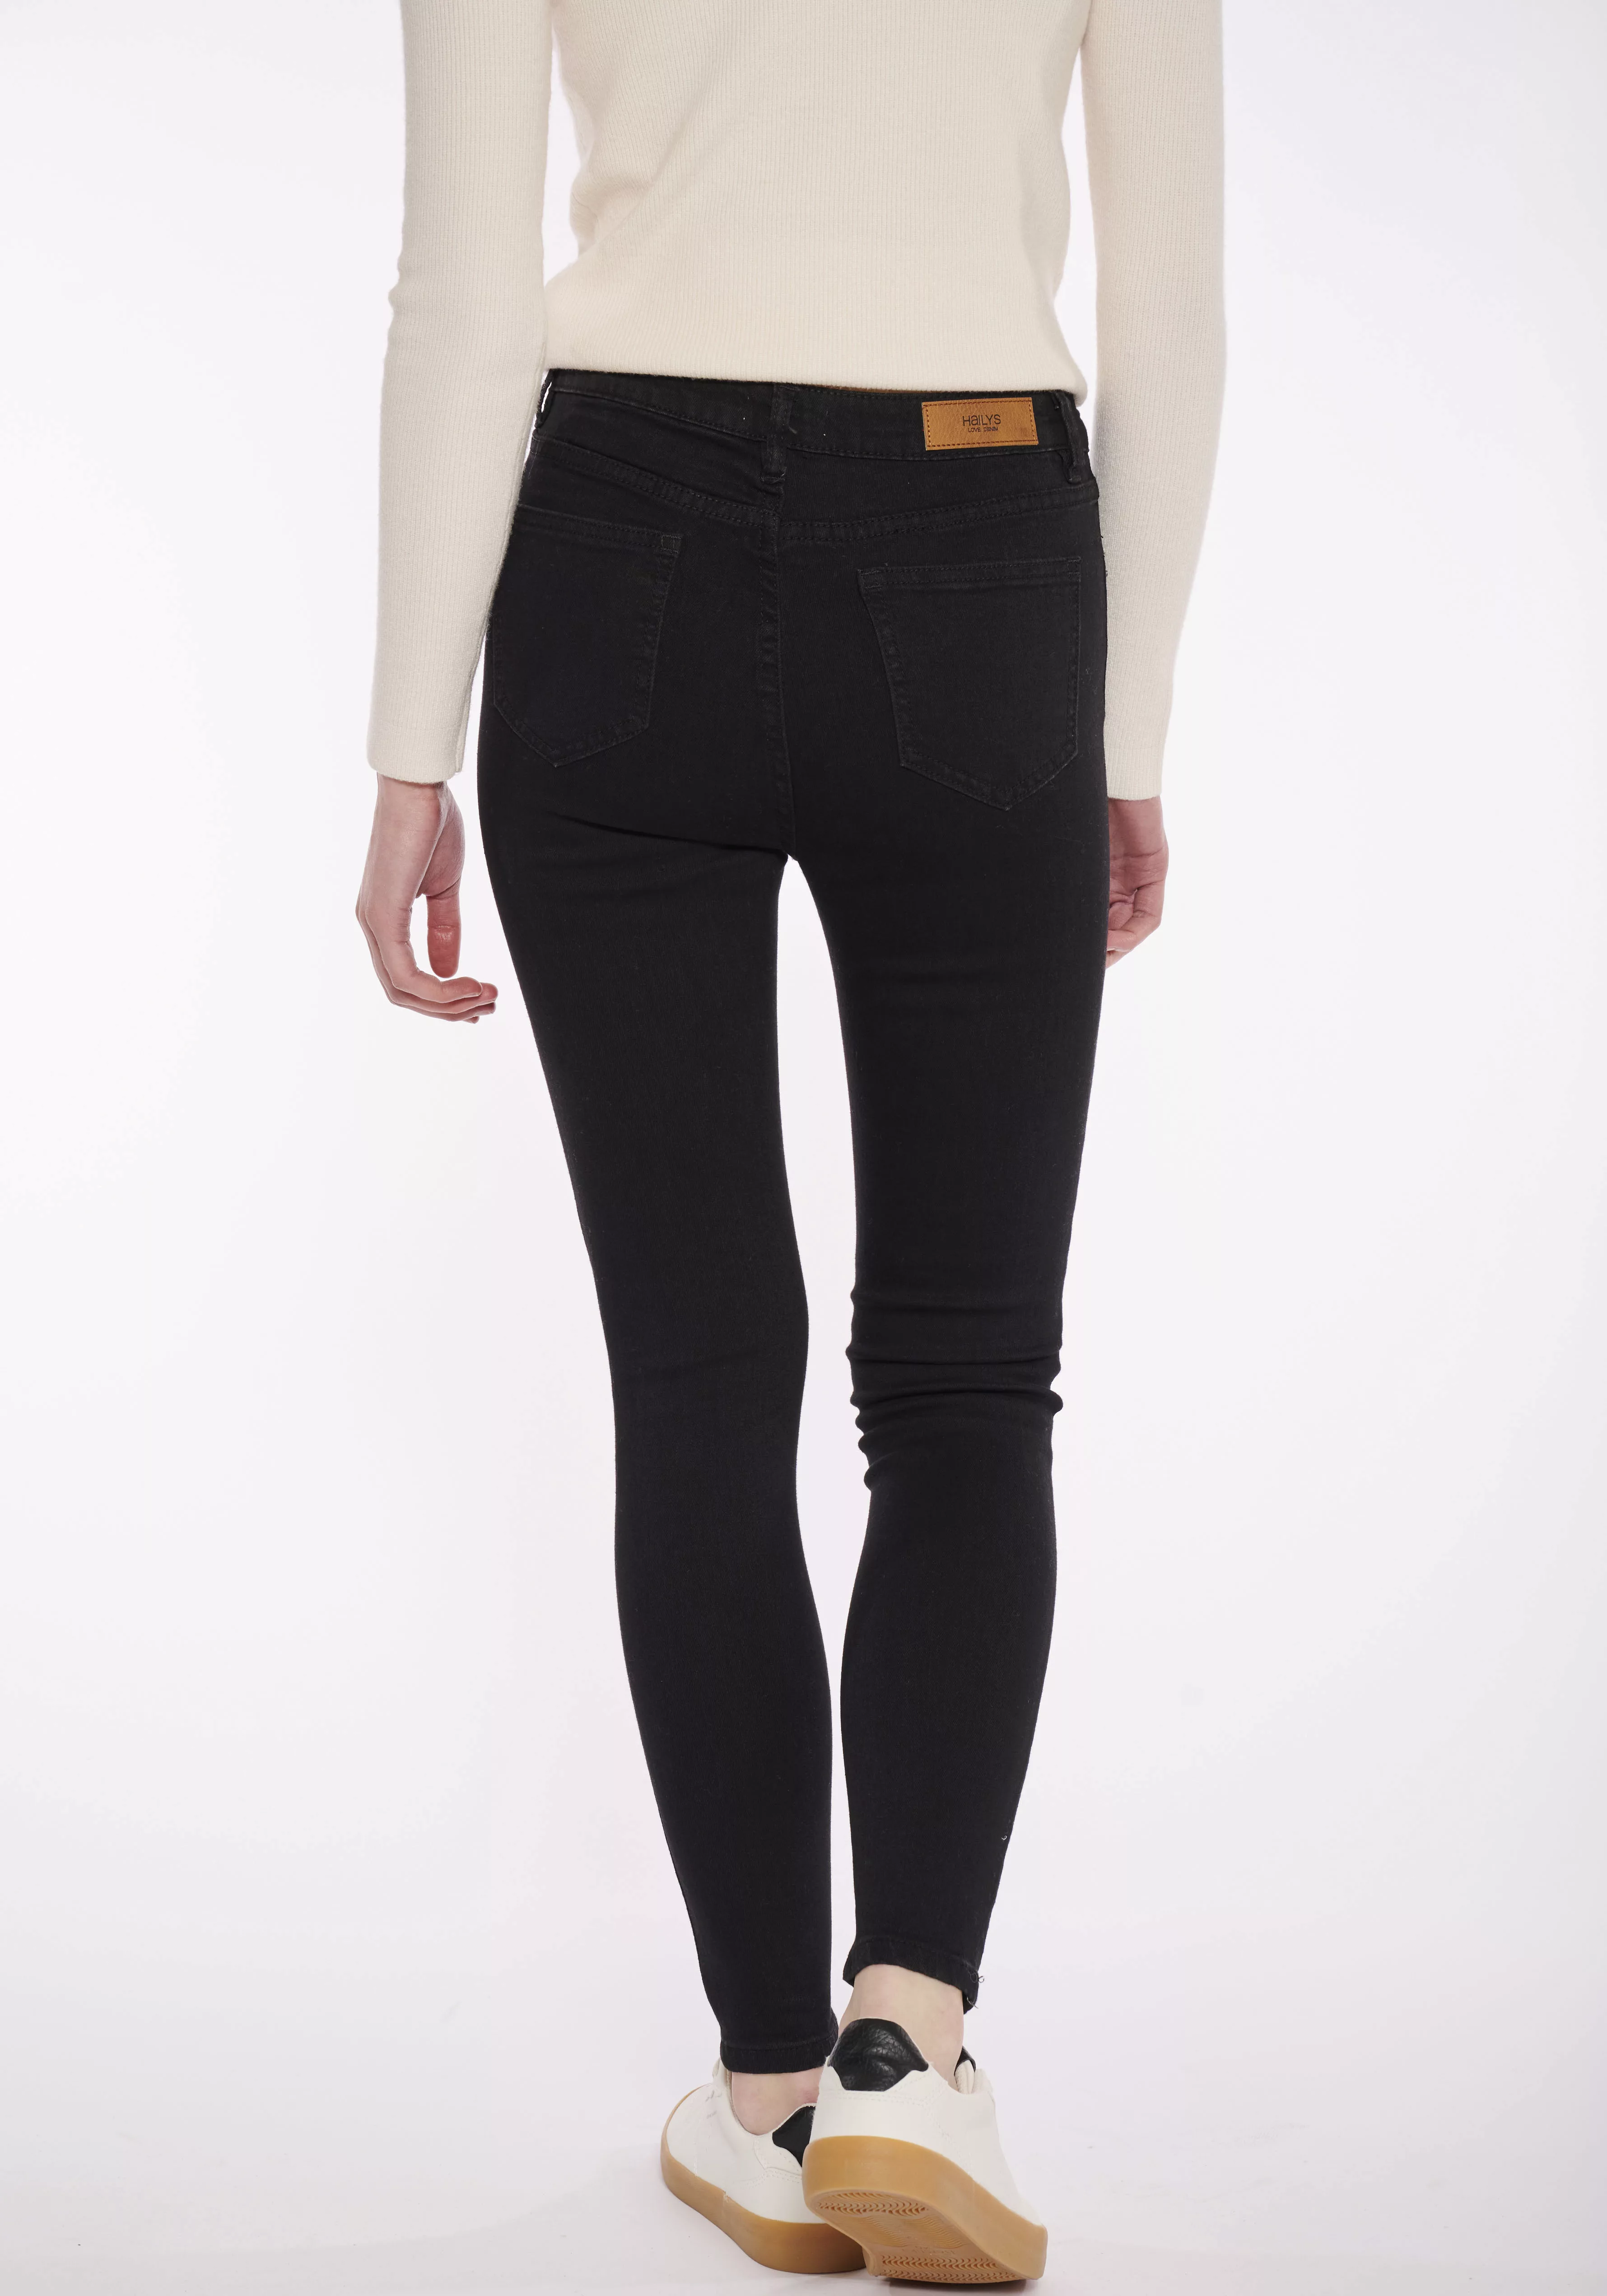 HaILY’S 5-Pocket-Jeans Modell: LG HW C JN Romina günstig online kaufen